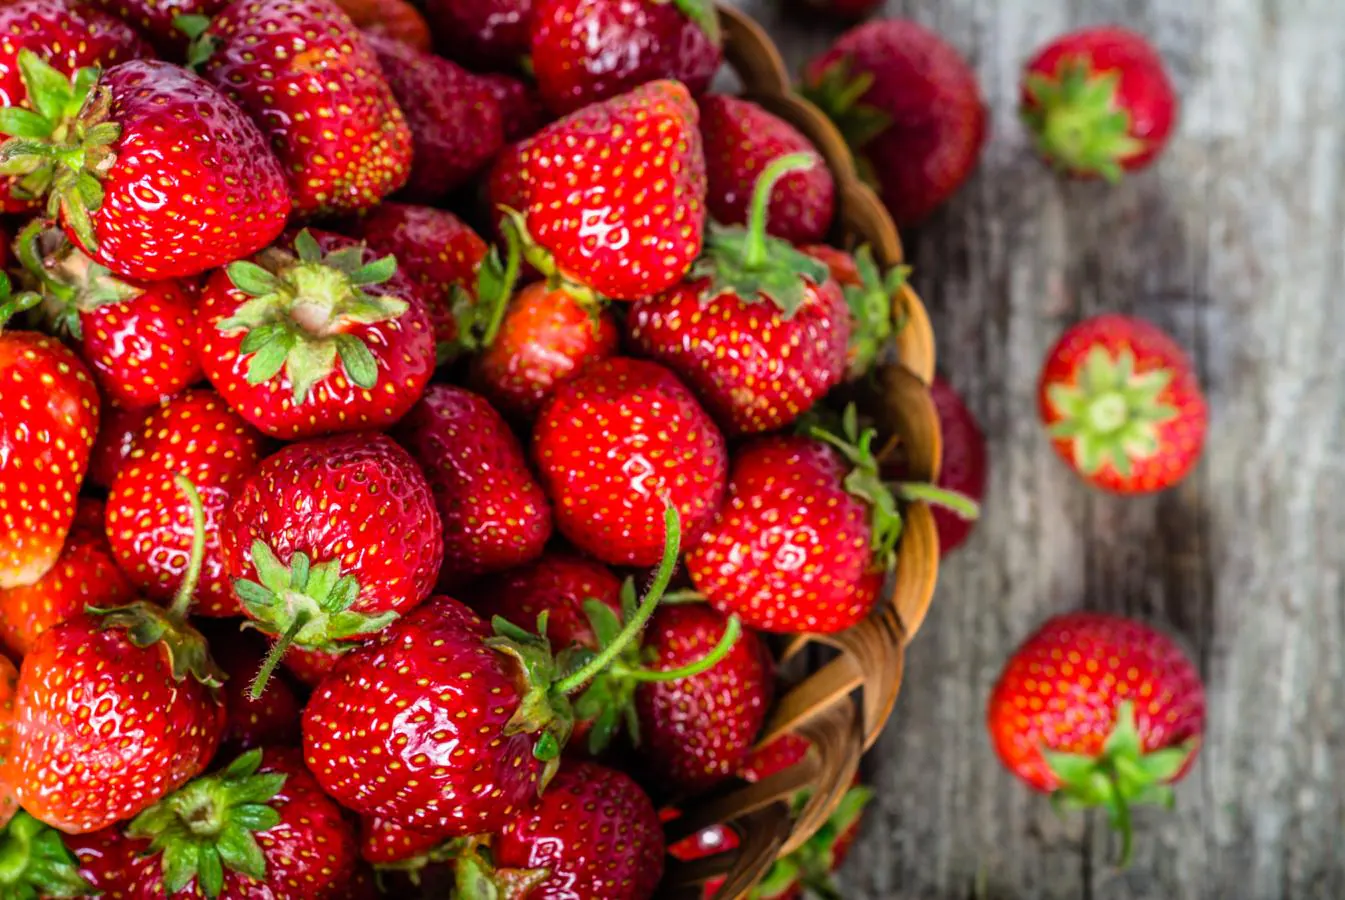 Fresas, un mimo para el corazón. Las <a href="https://www.abc.es/bienestar/alimentacion/abci-fresa-201909240903_noticia.html">fresas </a>son ricas en antioxidantes, fubras y minerales (potasio, magnesio y manganeso), además de aportar vitaminas C, B2, B6, E y ácido fólico. Su consumo en el marco de una dieta equilibrada se asocia a una menor incidencia de enfermedades cardiovasculares, además de que impulsa la prevención de la oxidanción del colesterol malo y la correcta función endoteliarl gracias al aumento de la concentración de antioxidantes en el plasma sanguíneo.